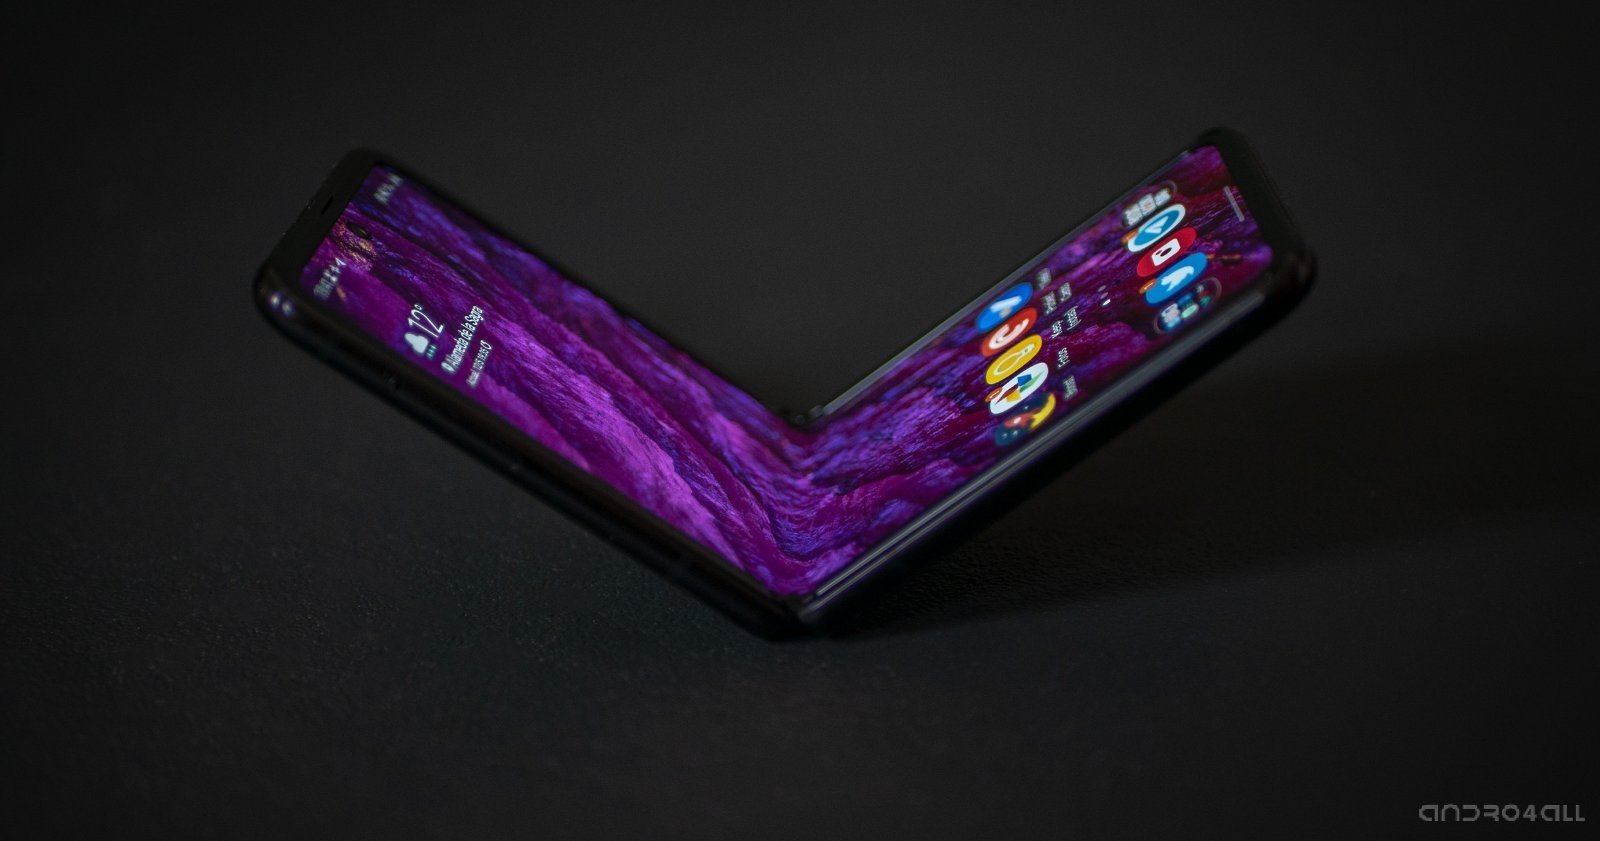 Samsung recorta el precio oficial del Galaxy Z Flip 5G: competirá con el S21 Ultra